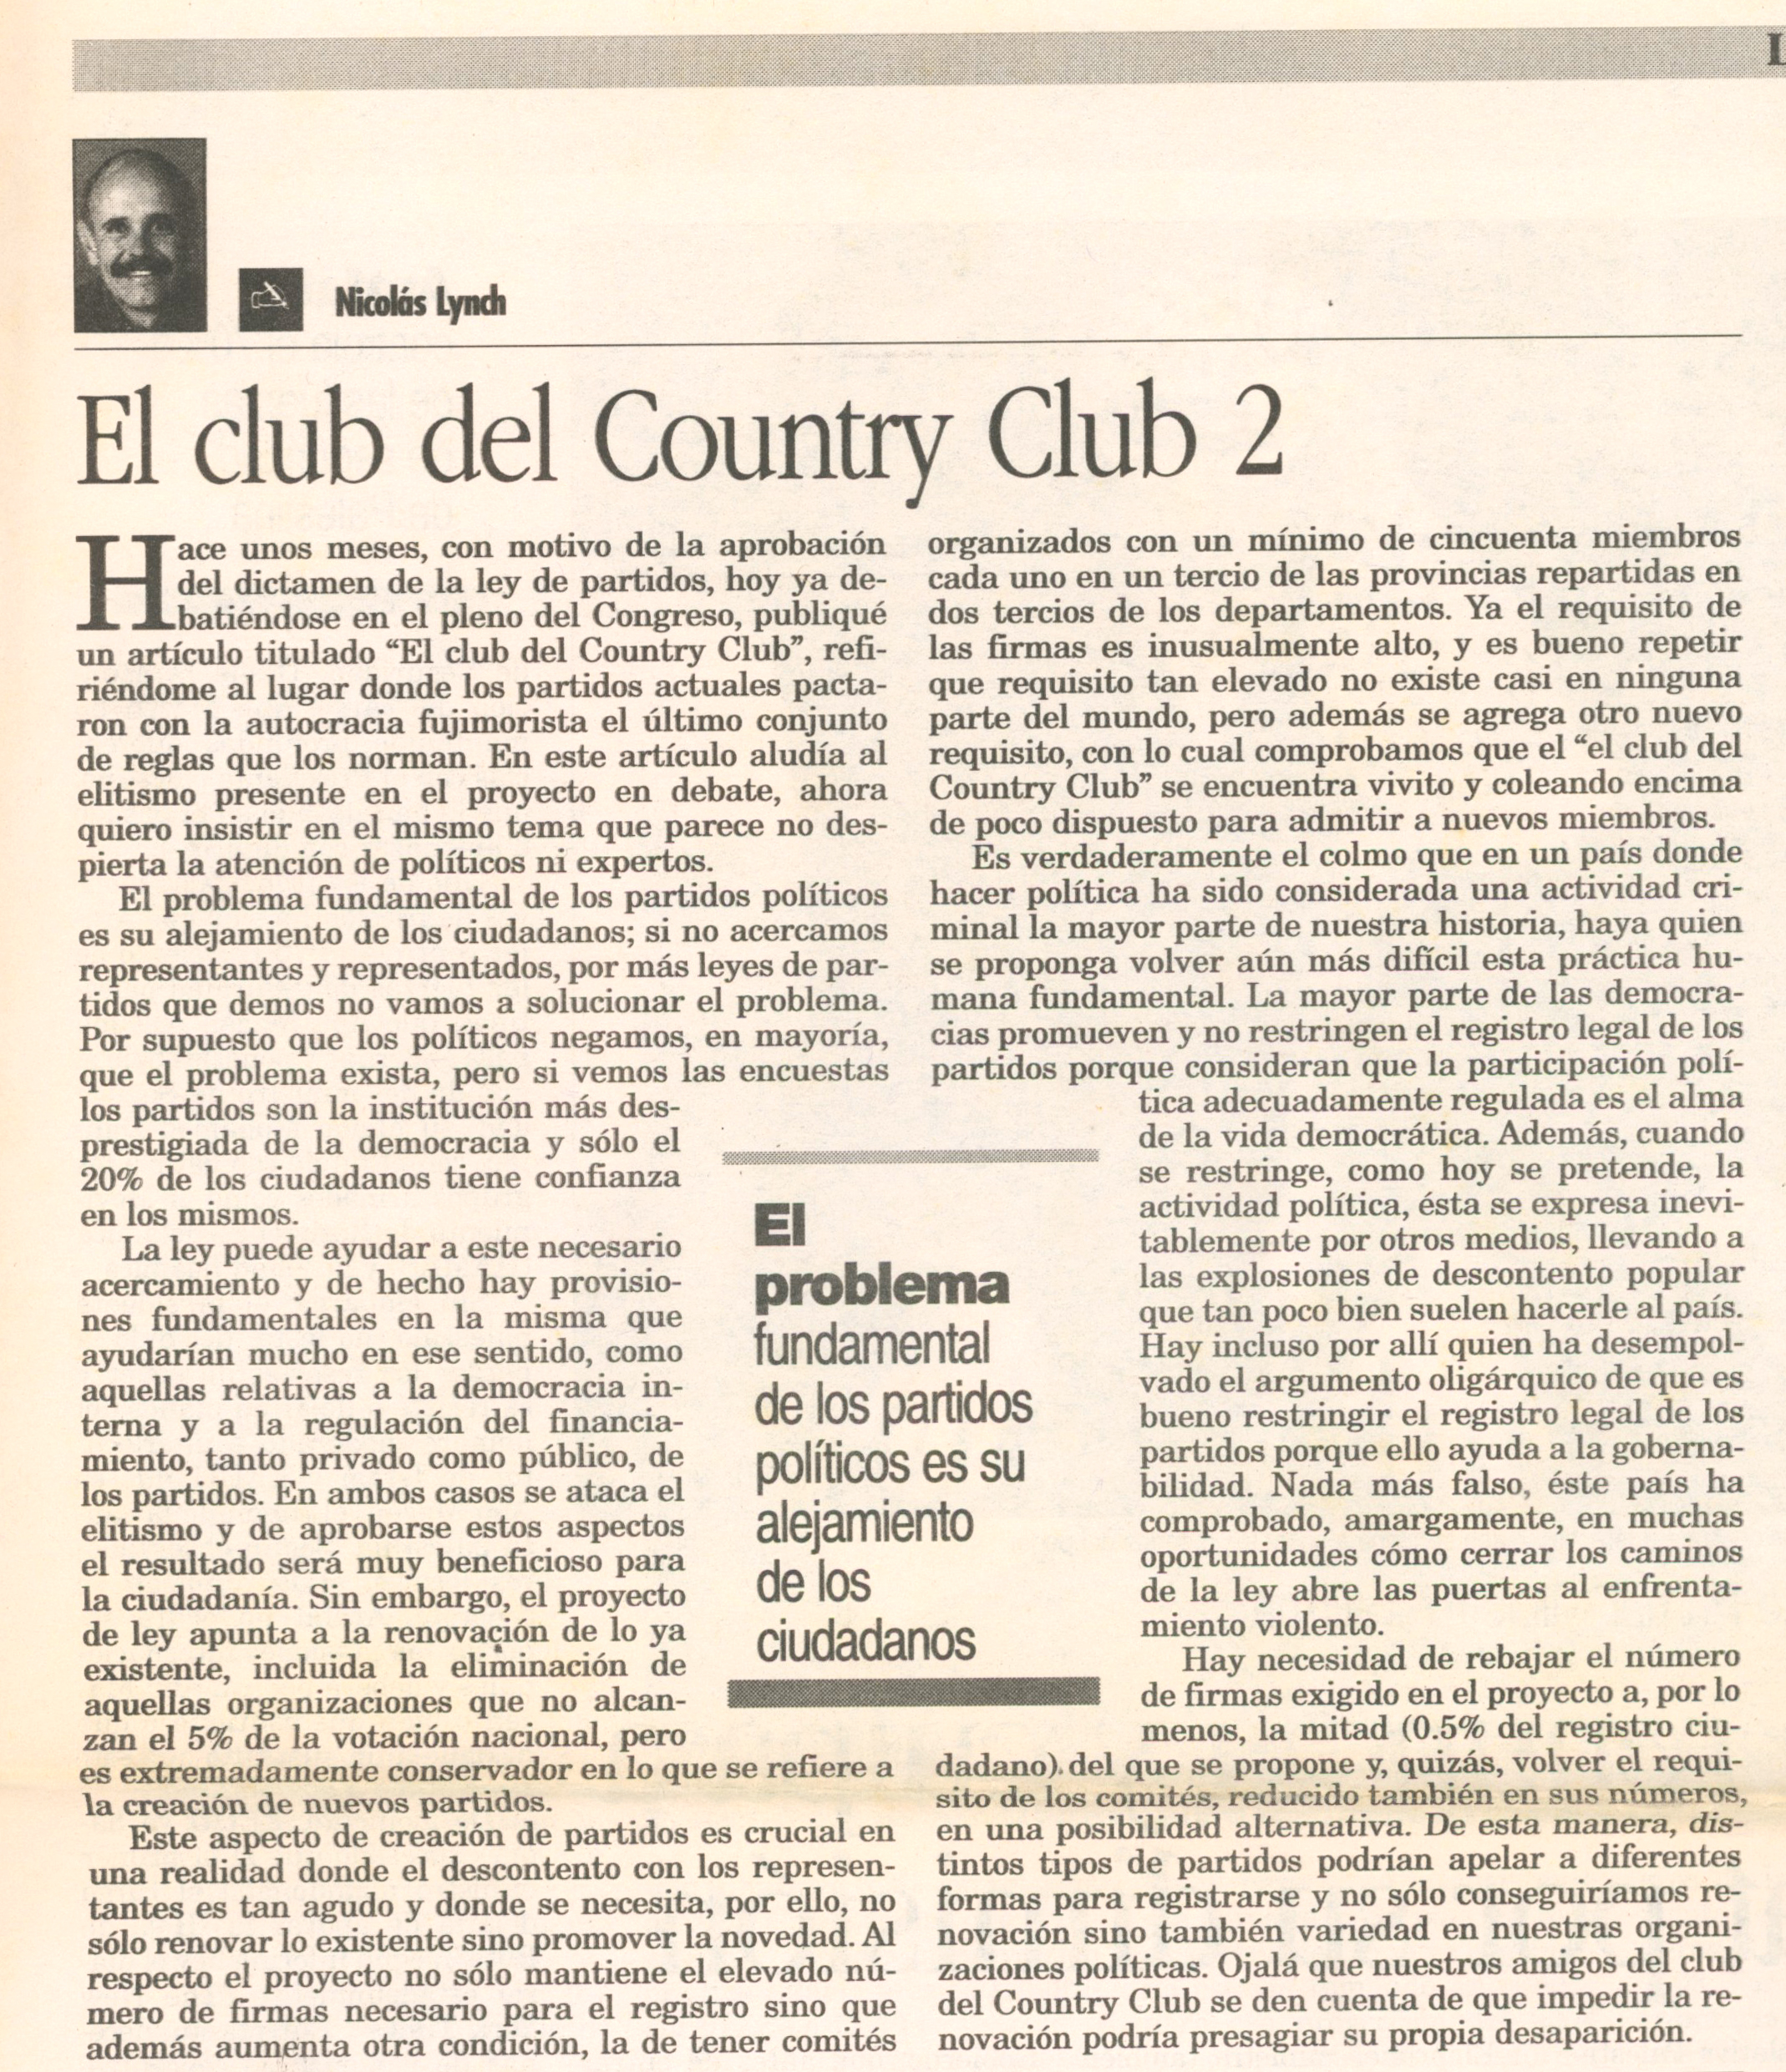 El club del country club 2 NL LR 07092003